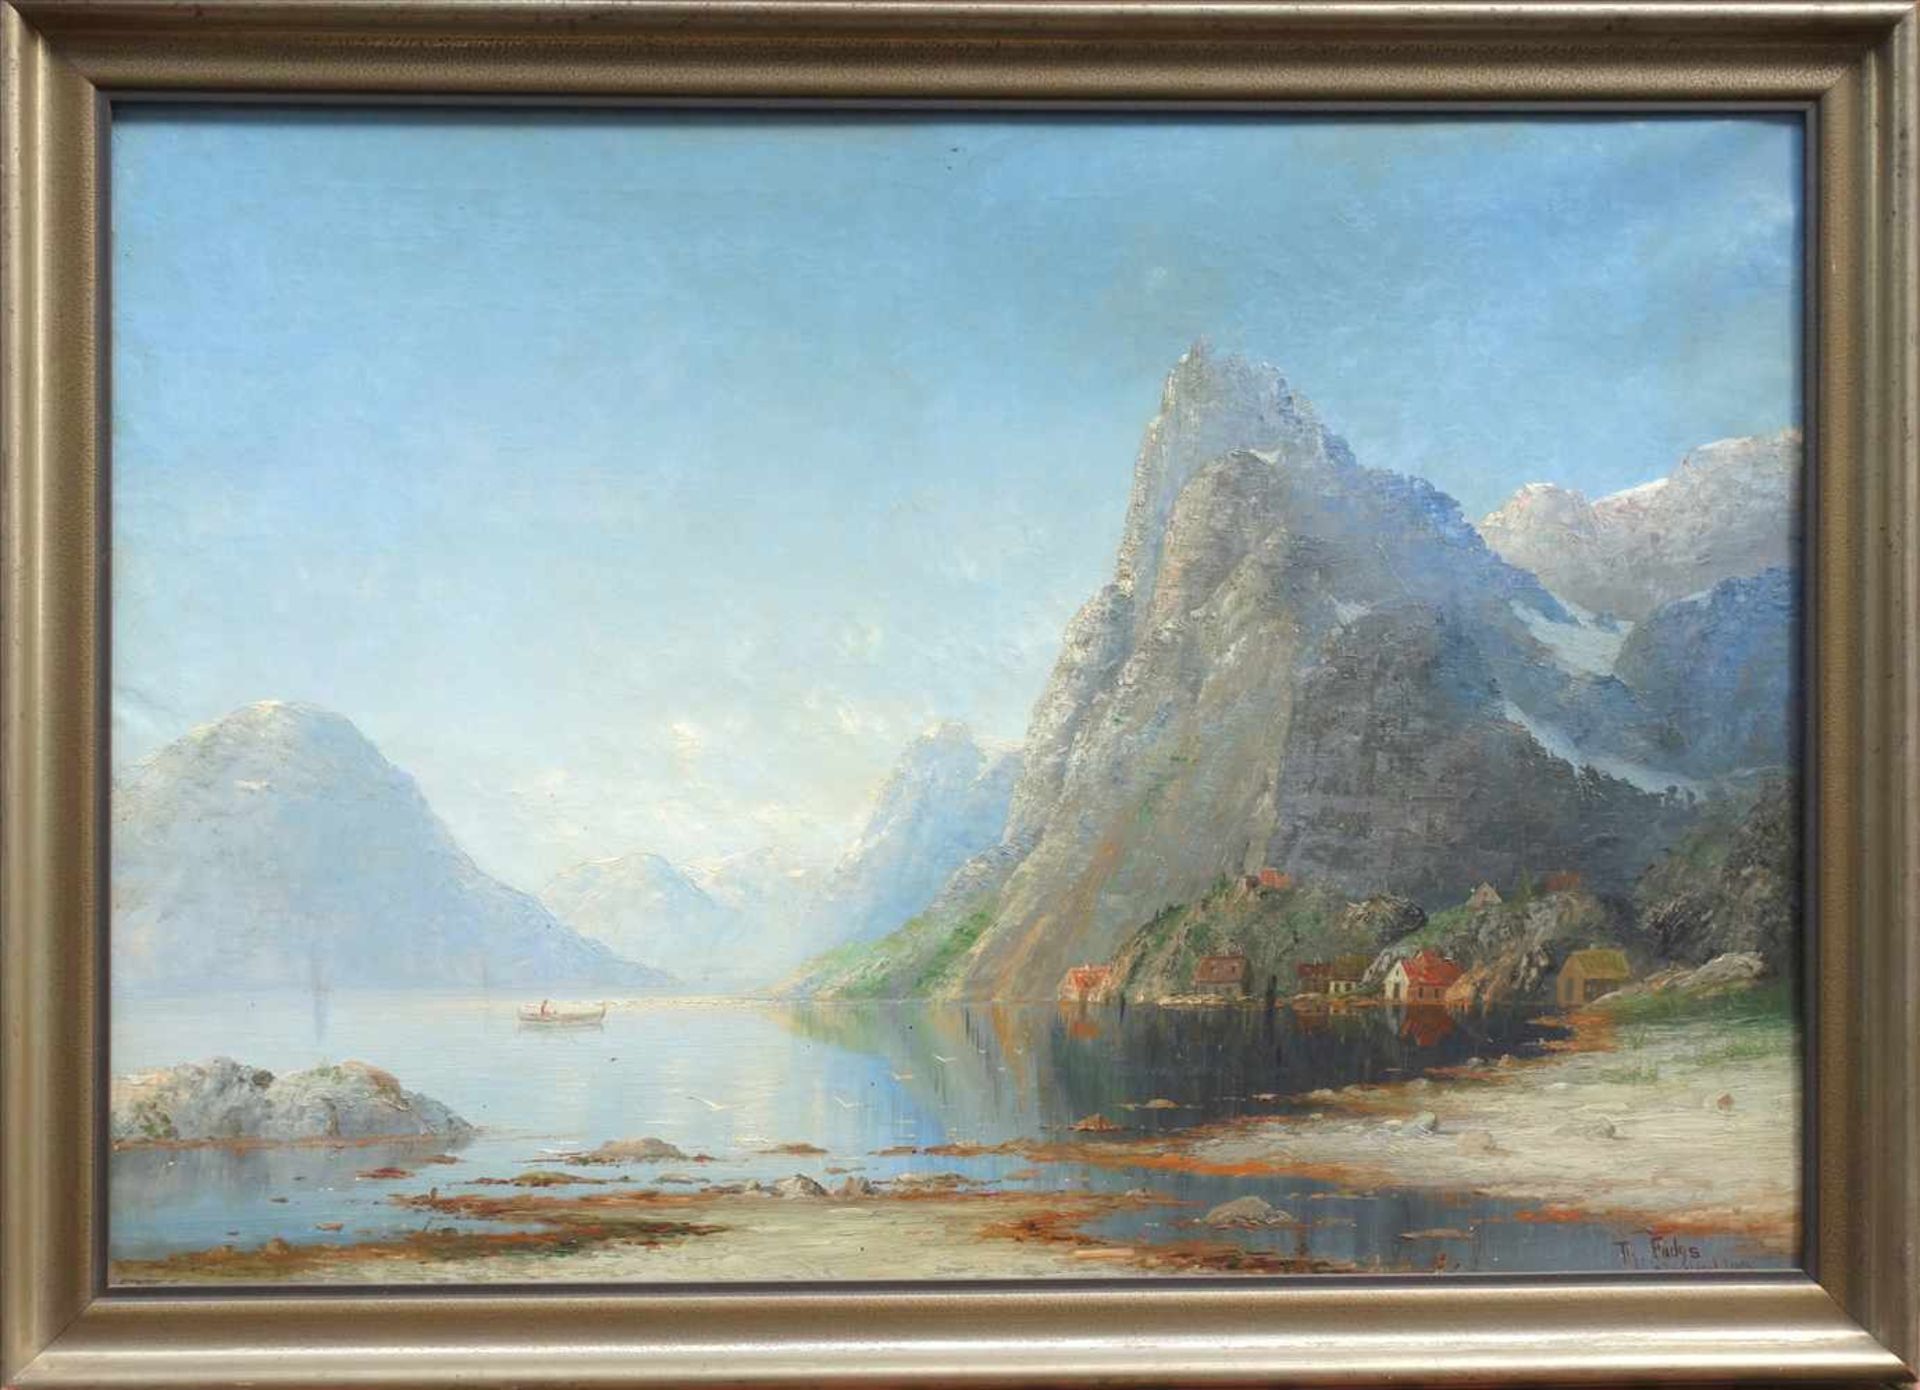 Therese Fuchs (1849-1898) "Motiv vom Nordfjord", 1893, Öl/Lw., norwegische Fjordlandschaft mit